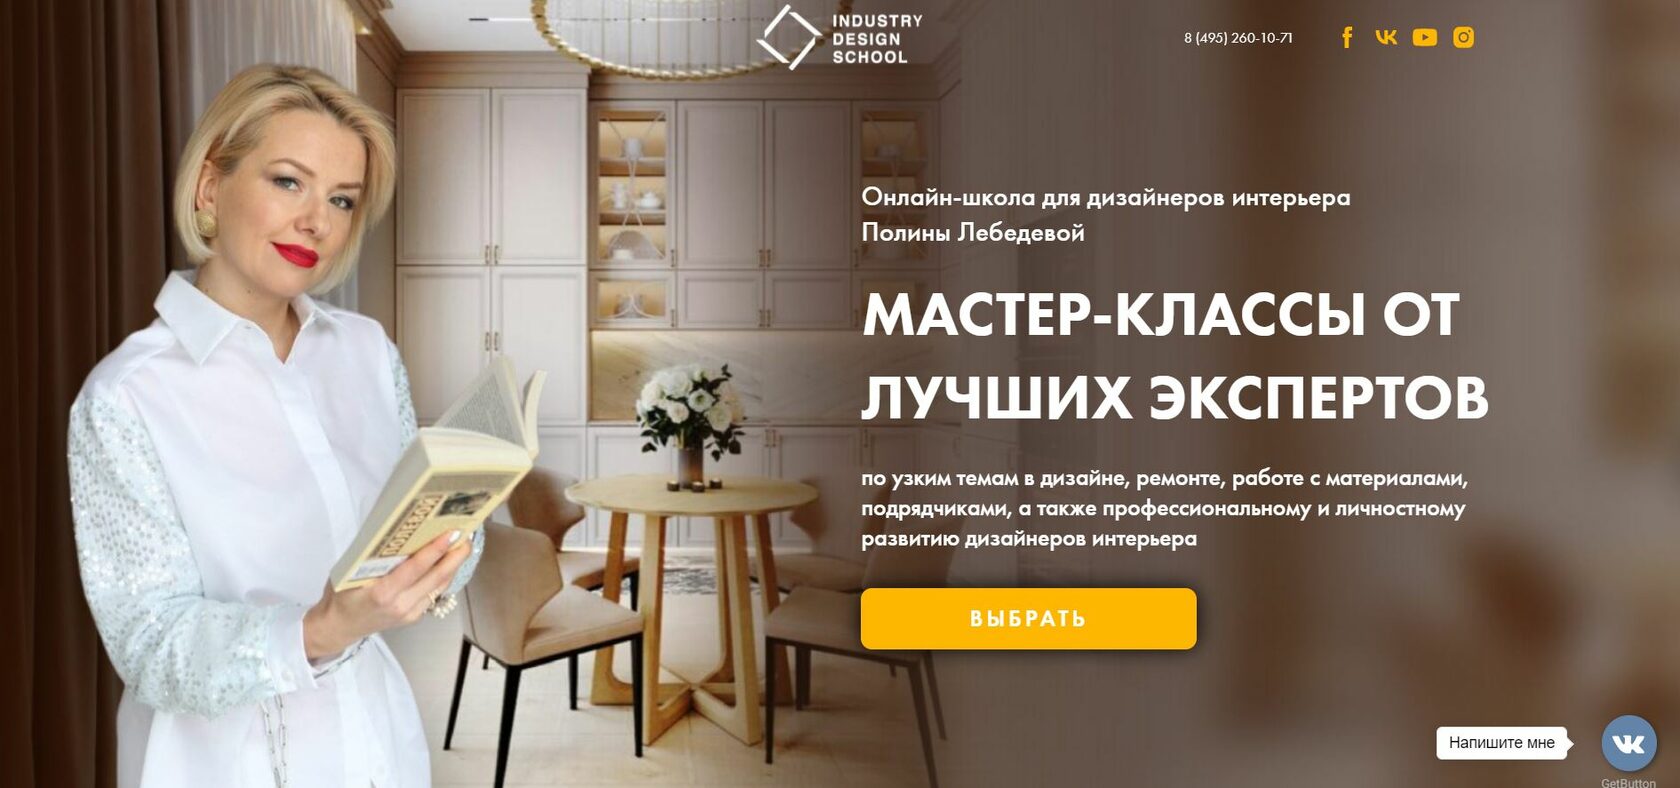 Все онлайн-курсы по дизайну в Рунете